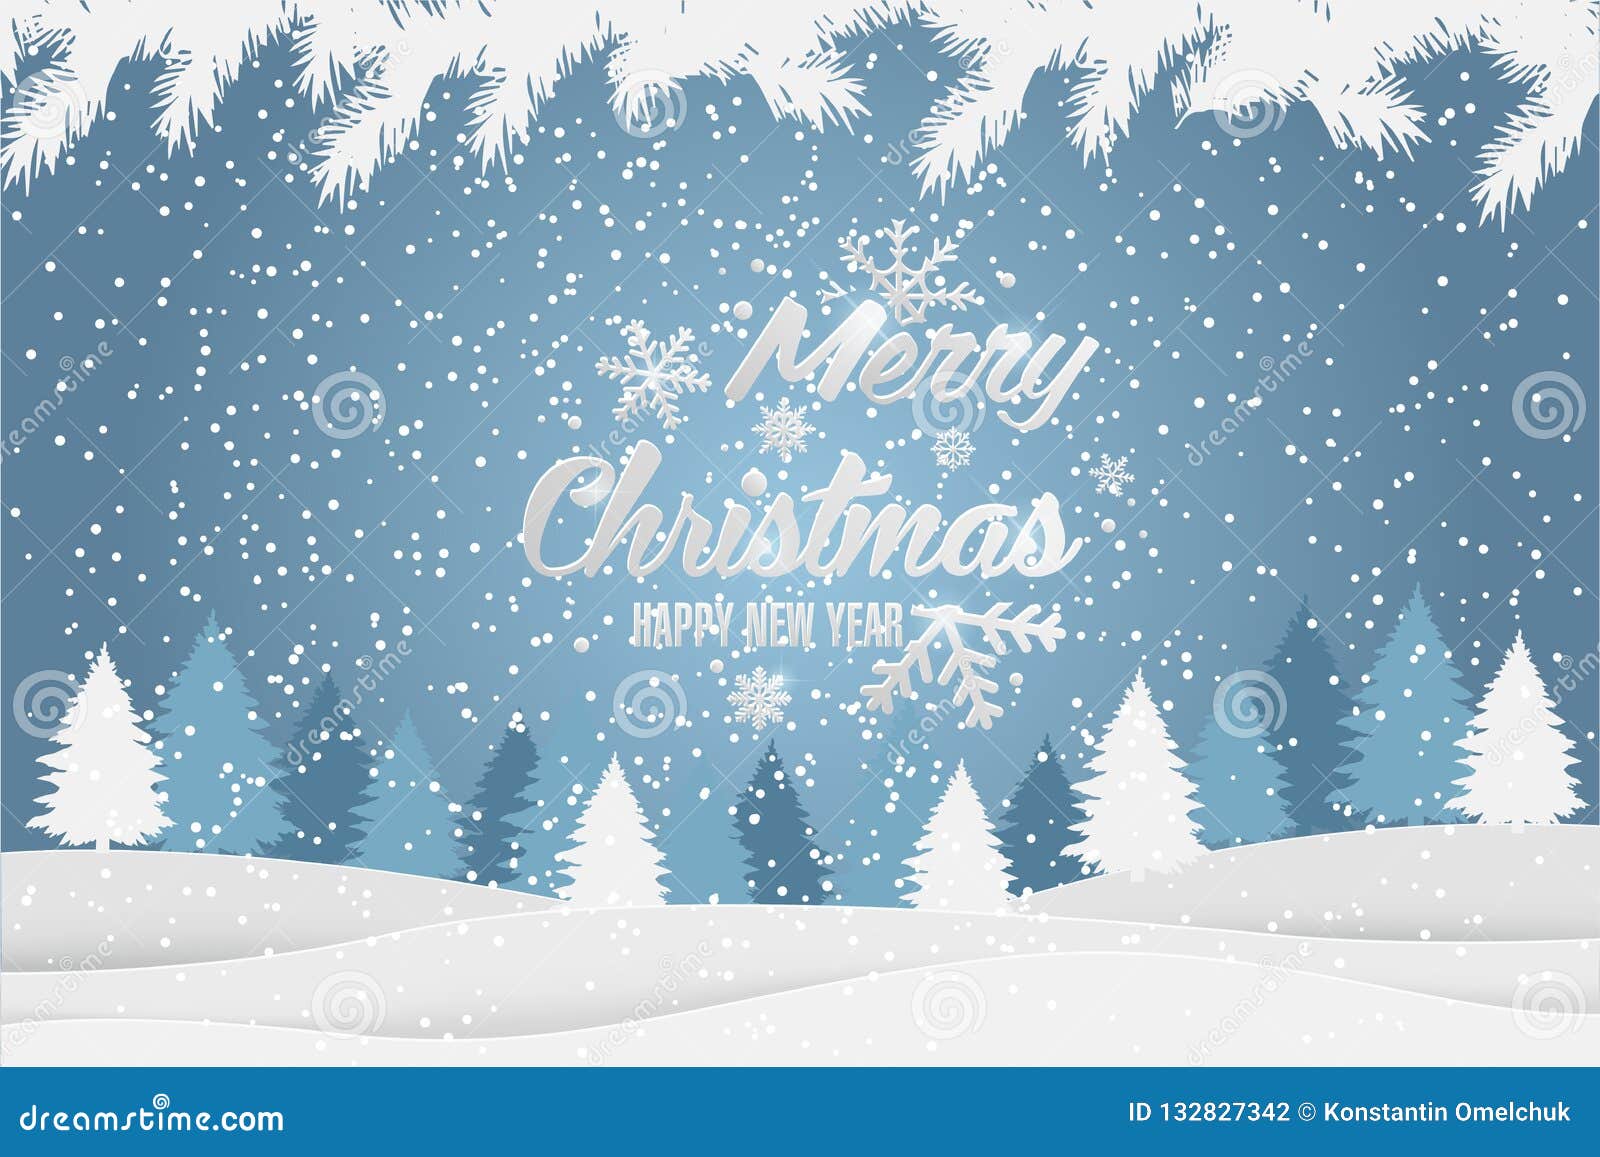 与冬天风景的圣诞节和新年印刷xmas背景圣诞快乐看板卡向量例证 插画包括有圣诞快乐看板卡 与冬天风景的圣诞节和新年印刷xmas背景